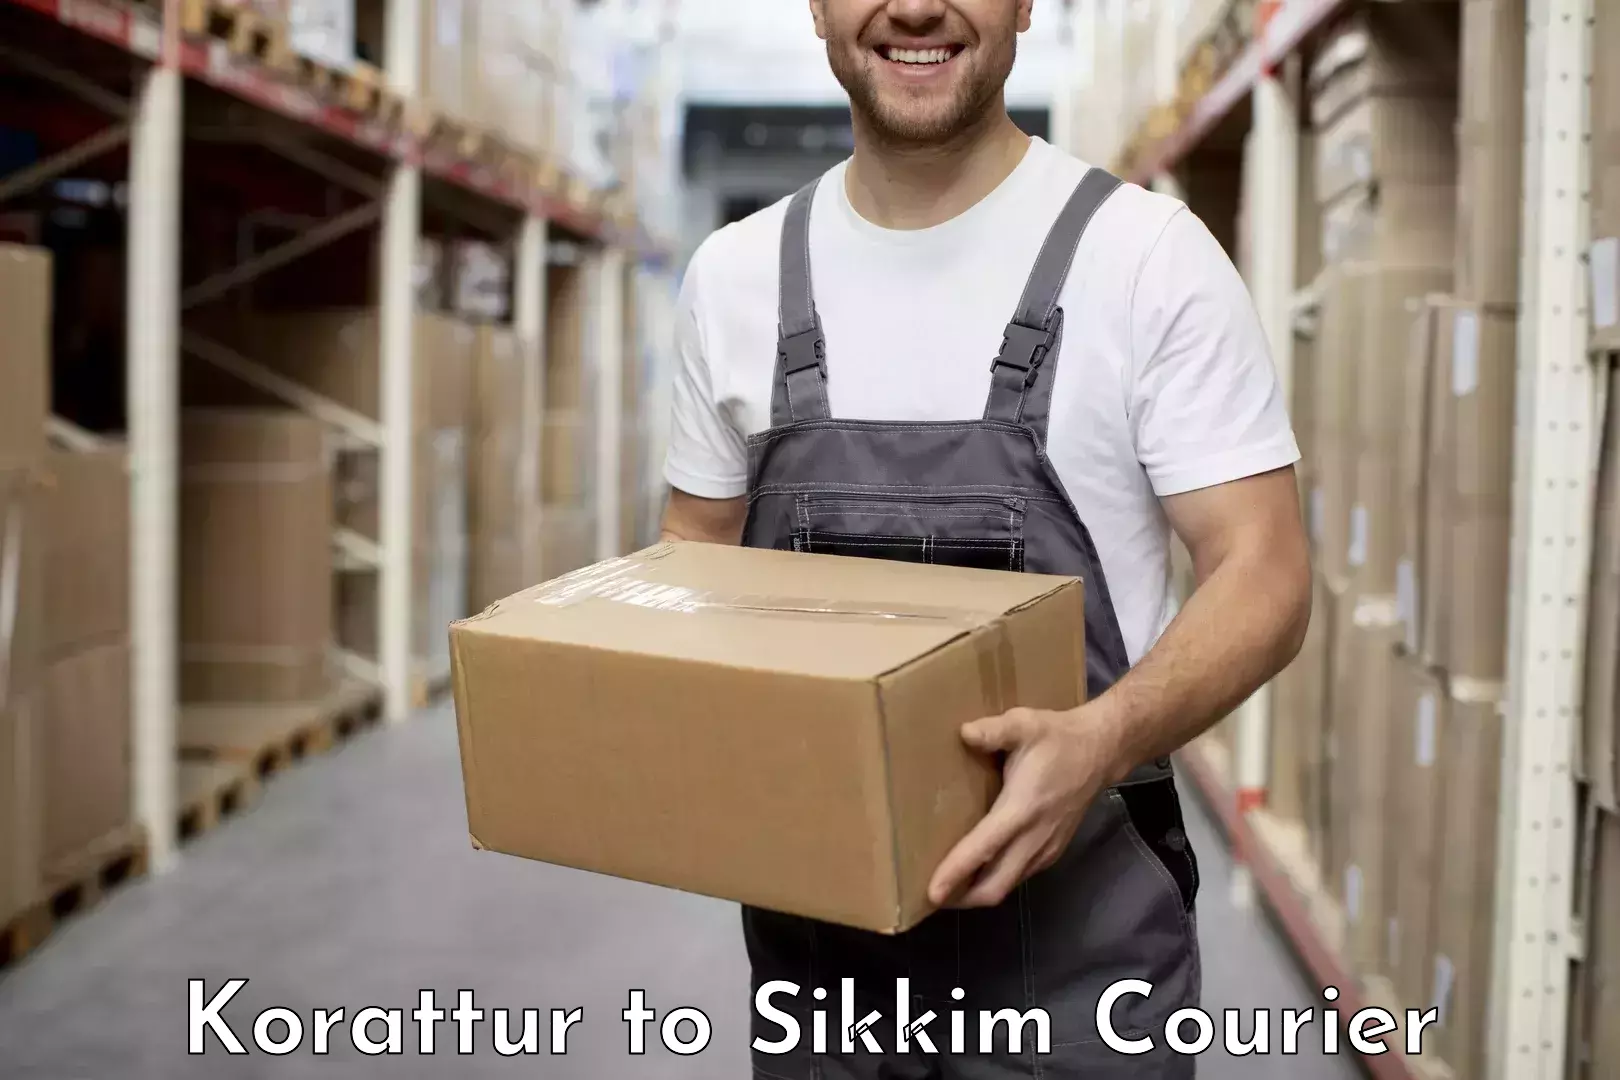 Custom courier packaging Korattur to Pelling